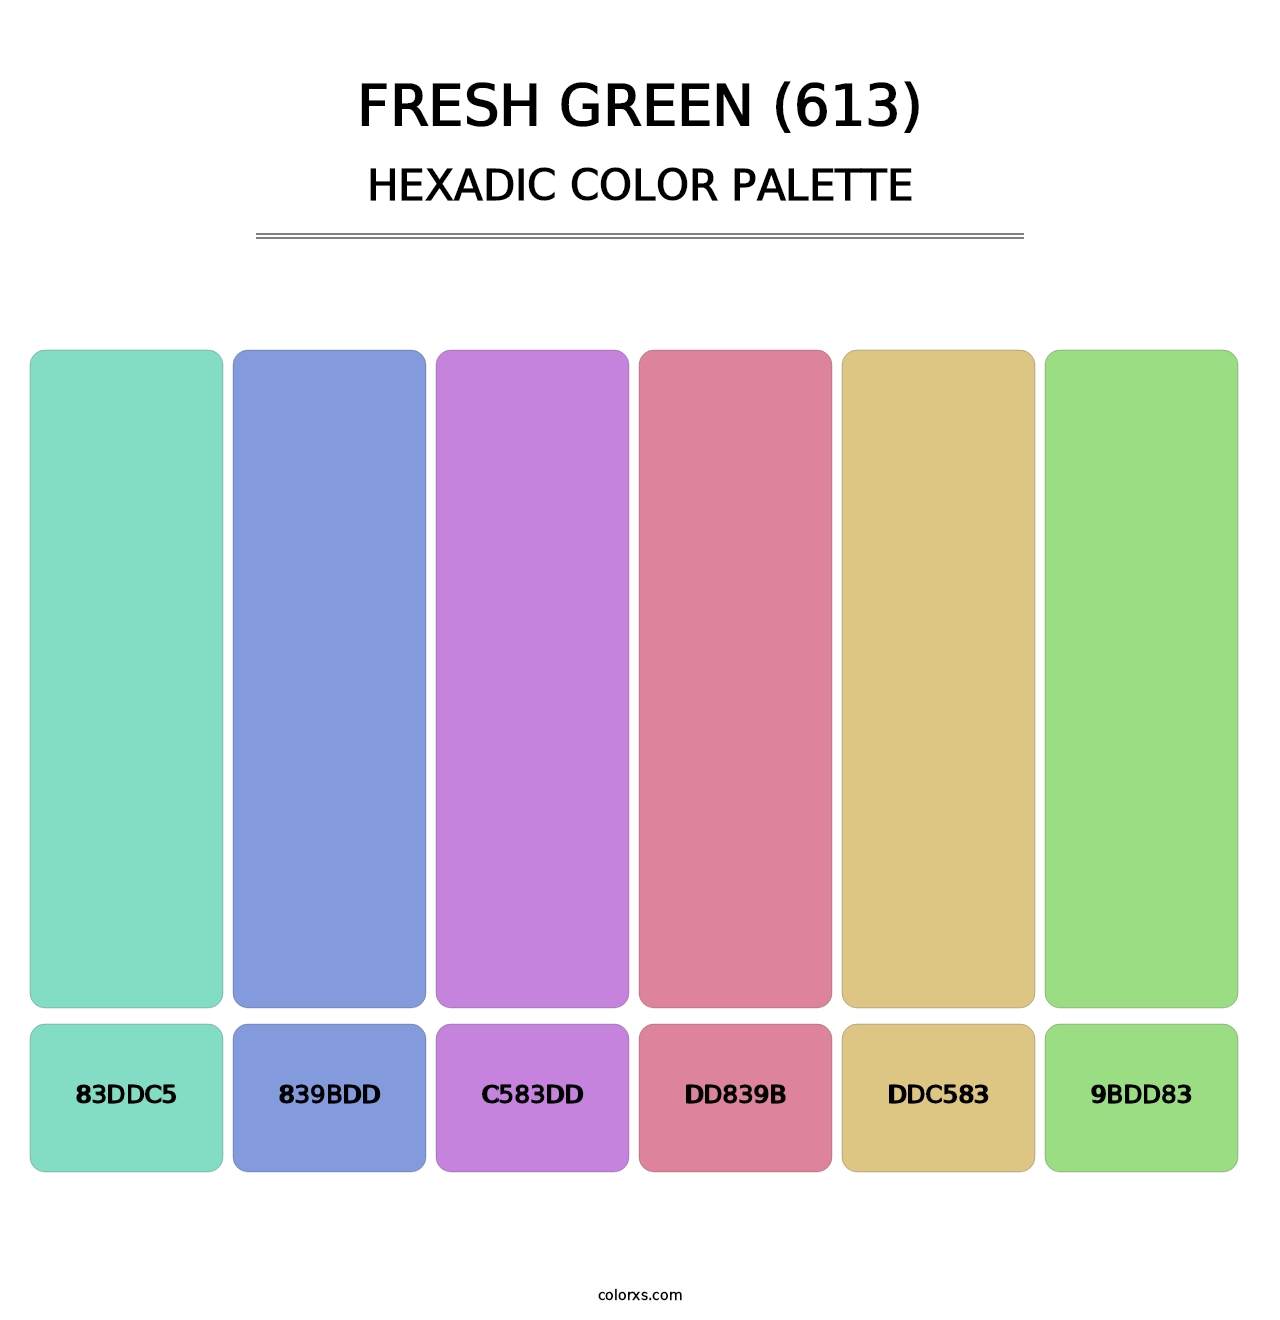 Fresh Green (613) - Hexadic Color Palette